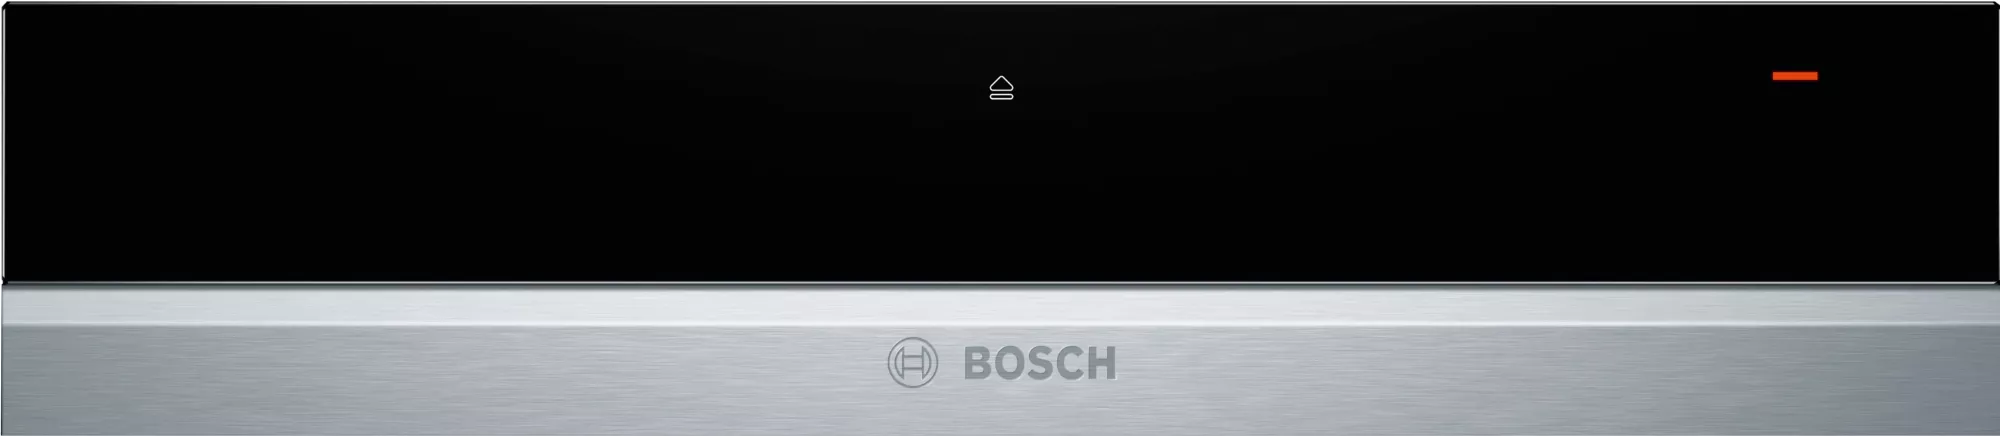 Bosch Serie 8, Wärmeschublade, 60 x 14 cm, Edelstahl, BIC630NS1